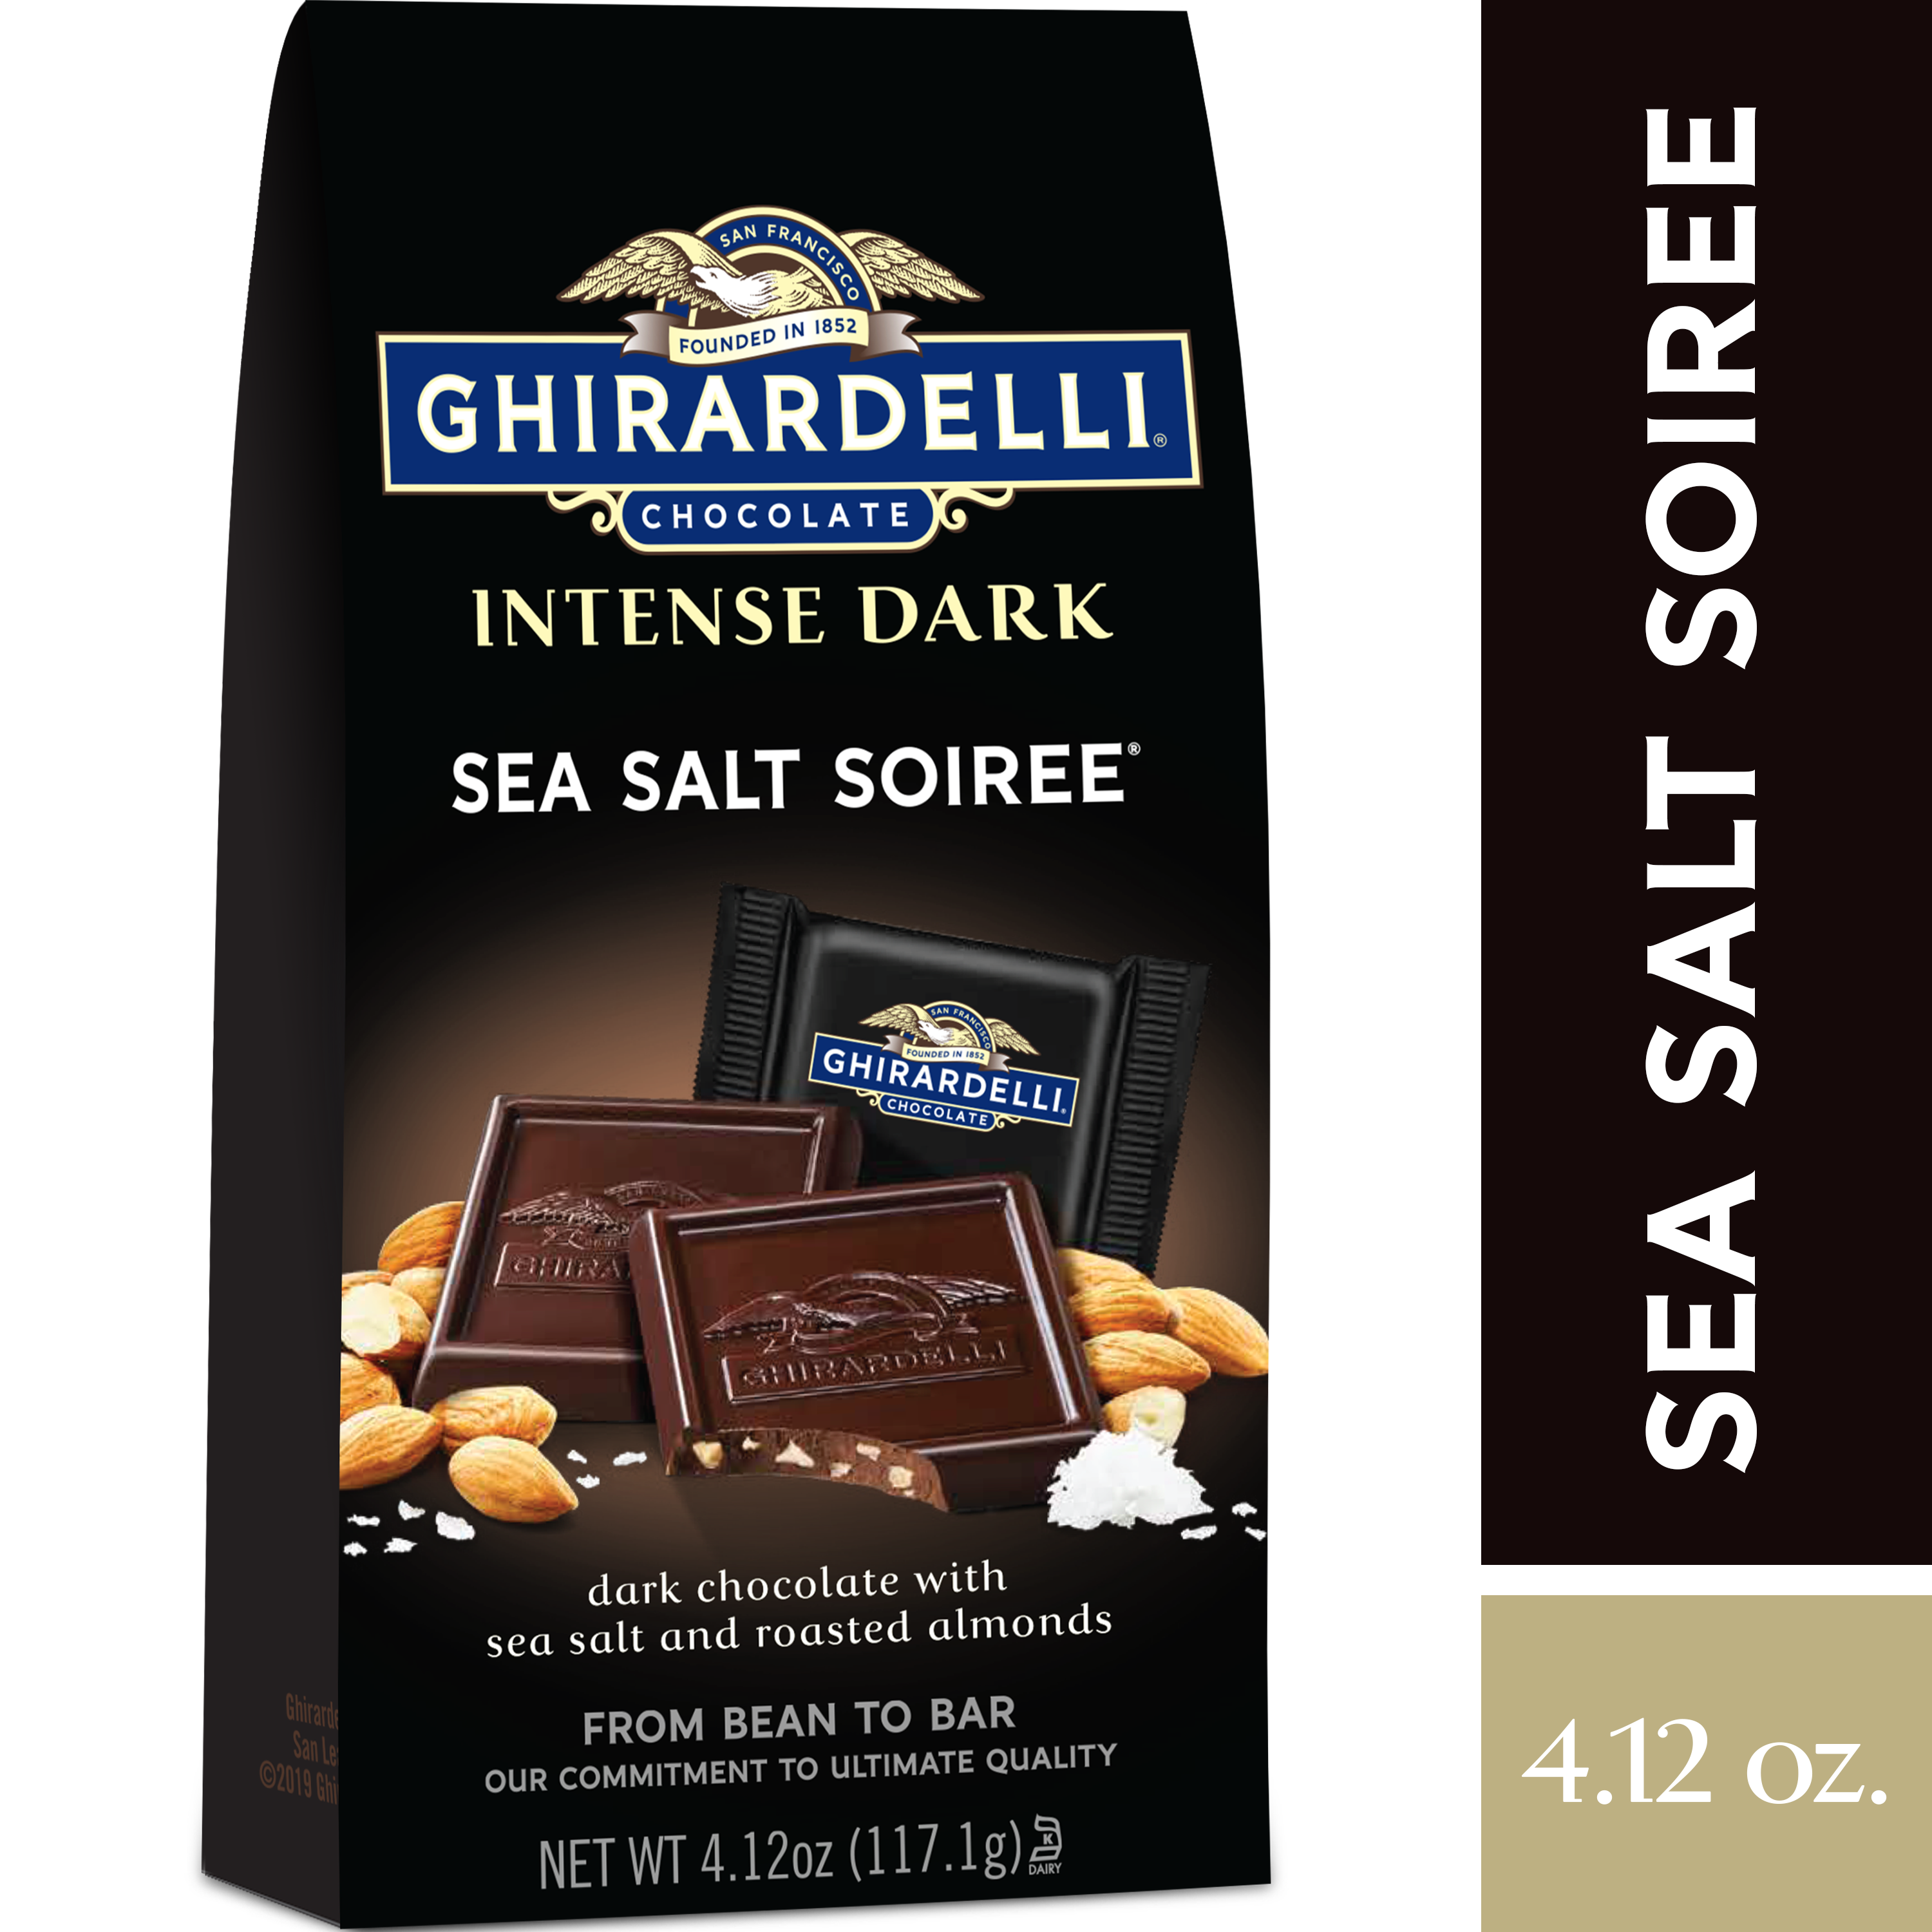 Undercover Dark Chocolate + Sea Salt Chocolate Quinoa Crisps - 3oz